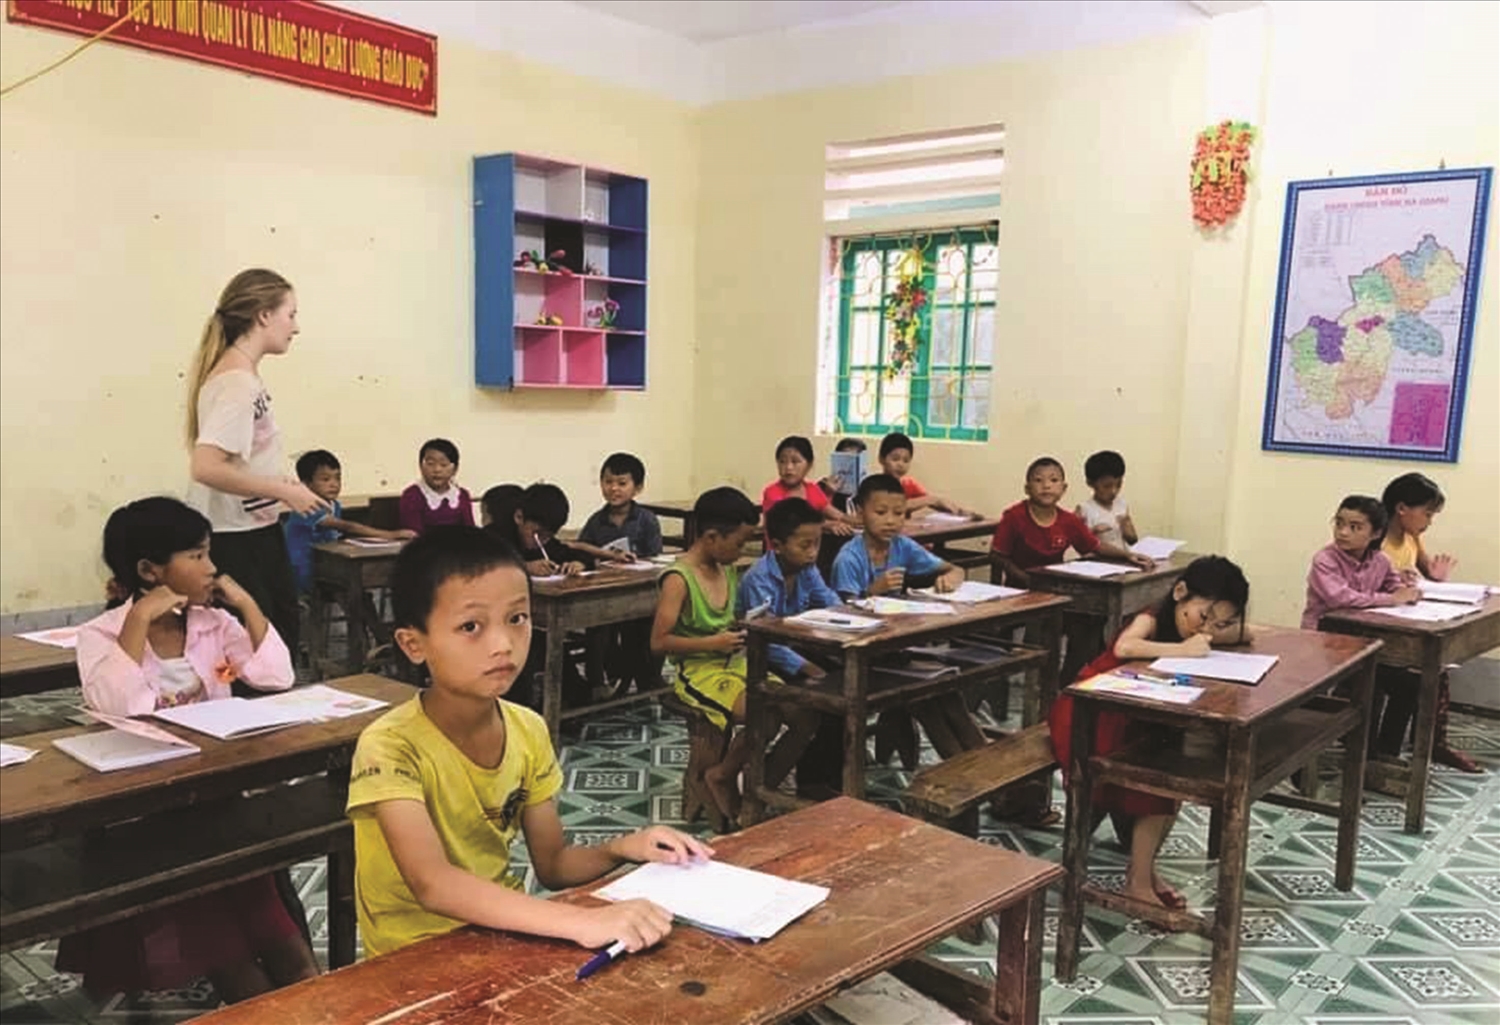  Sùng Mỹ Yên kết nối với các tình nguyện viên người nước ngoài dạy tiếng Anh cho trẻ em Mông tại Mèo Vạc.